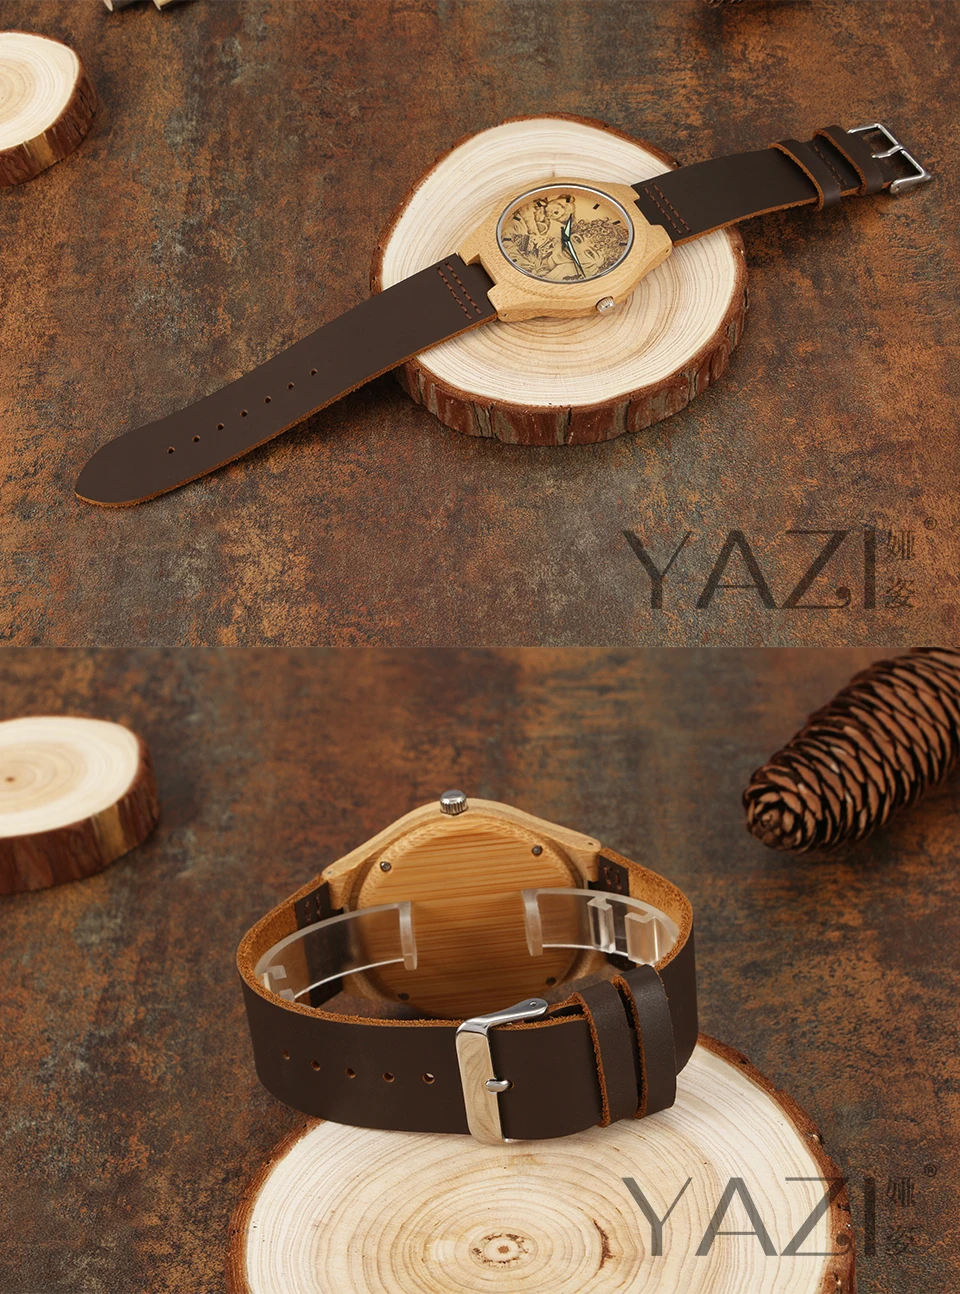 YAZI персональные пользовательские фото деревянные часы печать свой собственный эскиз дизайн наручные часы природа бамбук деревянный ящик из натуральной кожи часы